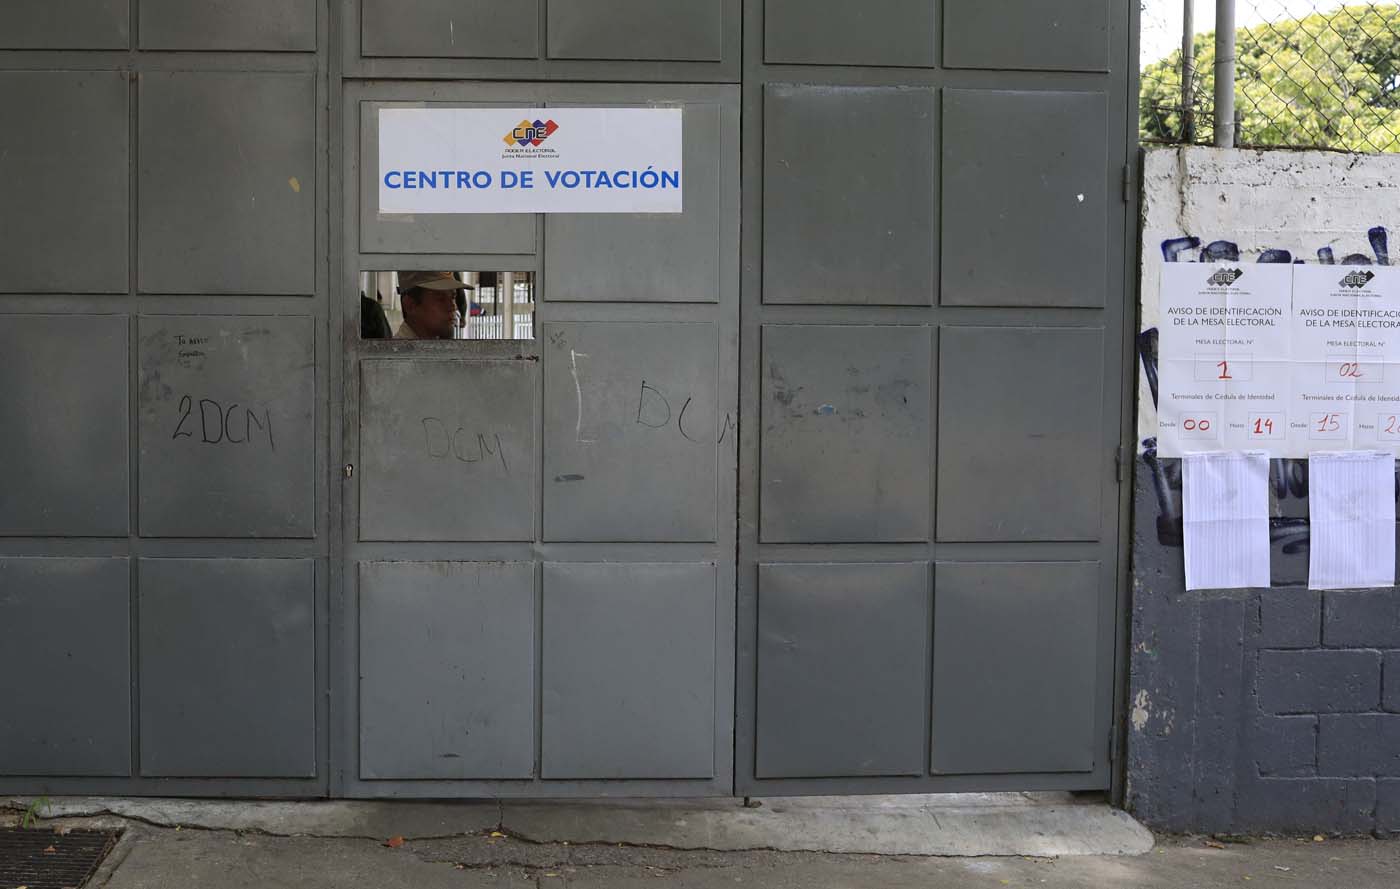 Brasil dice elecciones venezolanas carecen de legitimidad y credibilidad